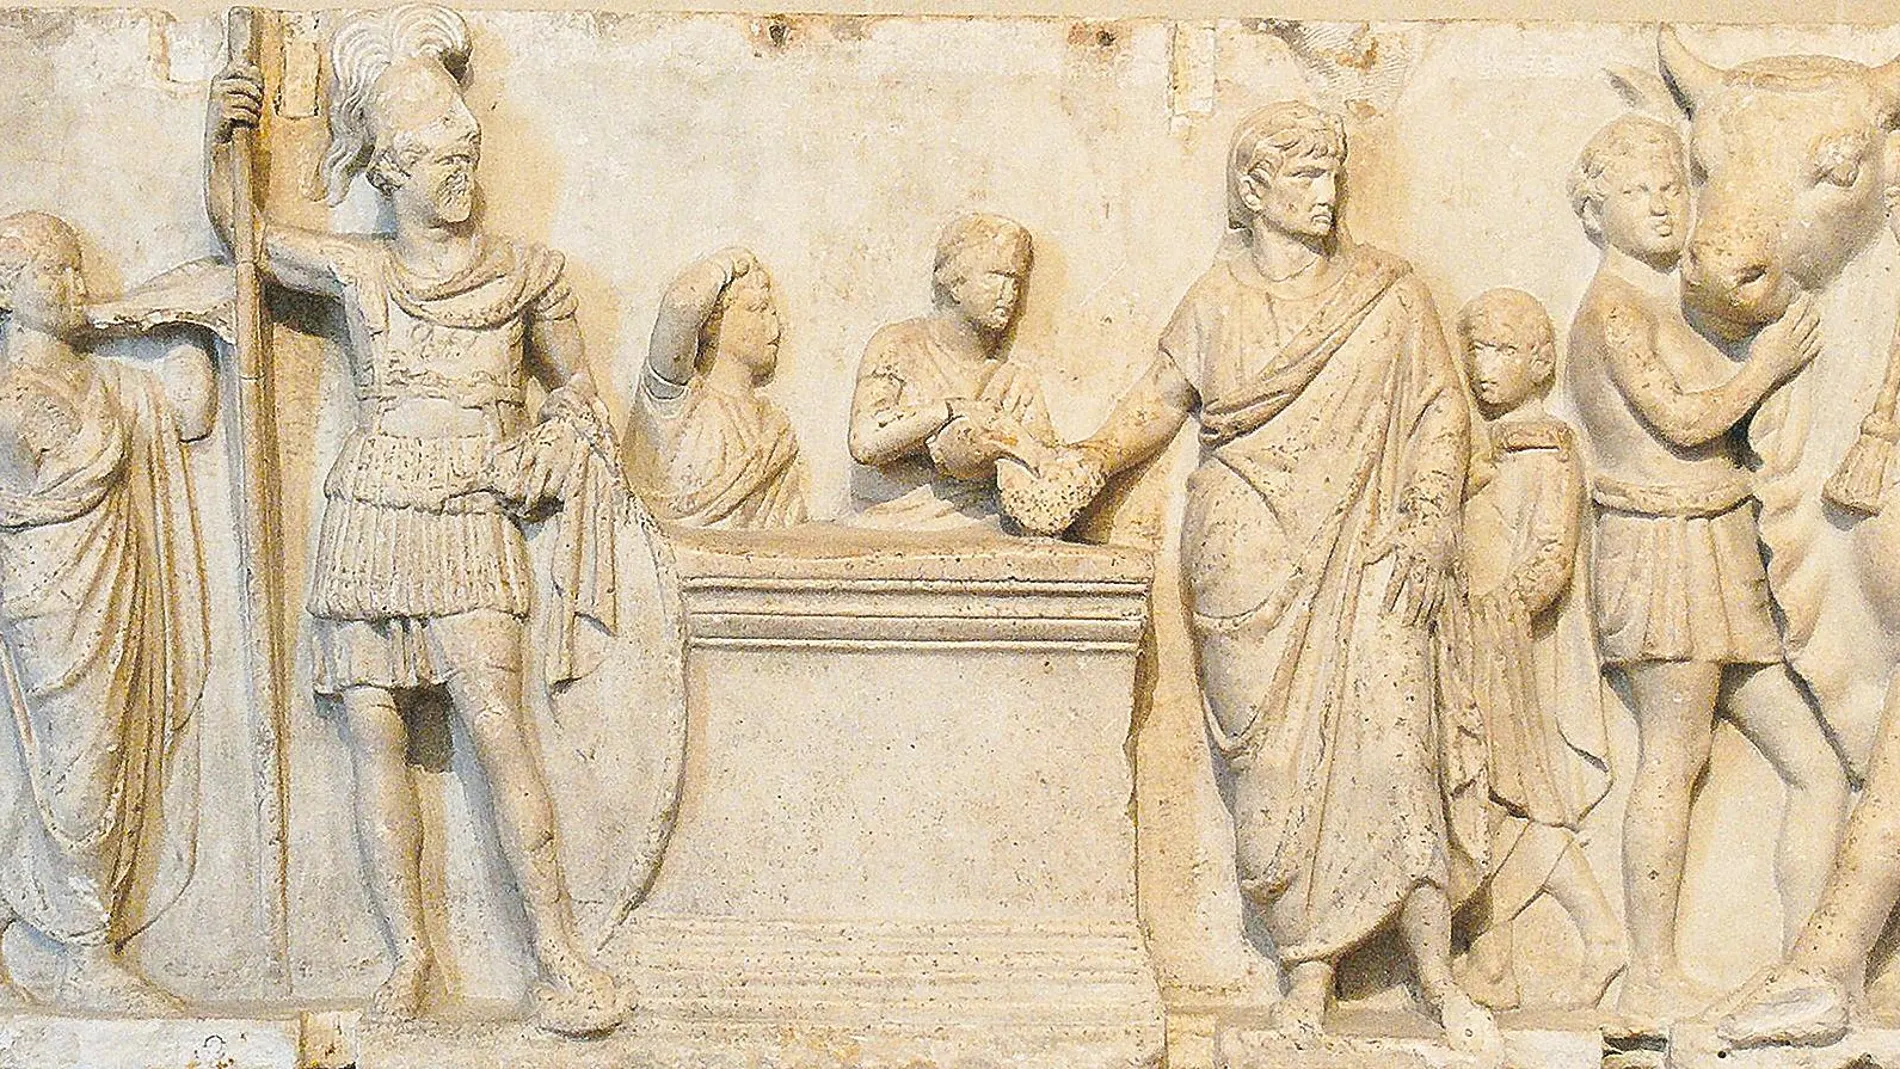 Uno de los paneles del altar de Domicio Ahenobarbo, que representa el primer censo militar documentado hasta la época